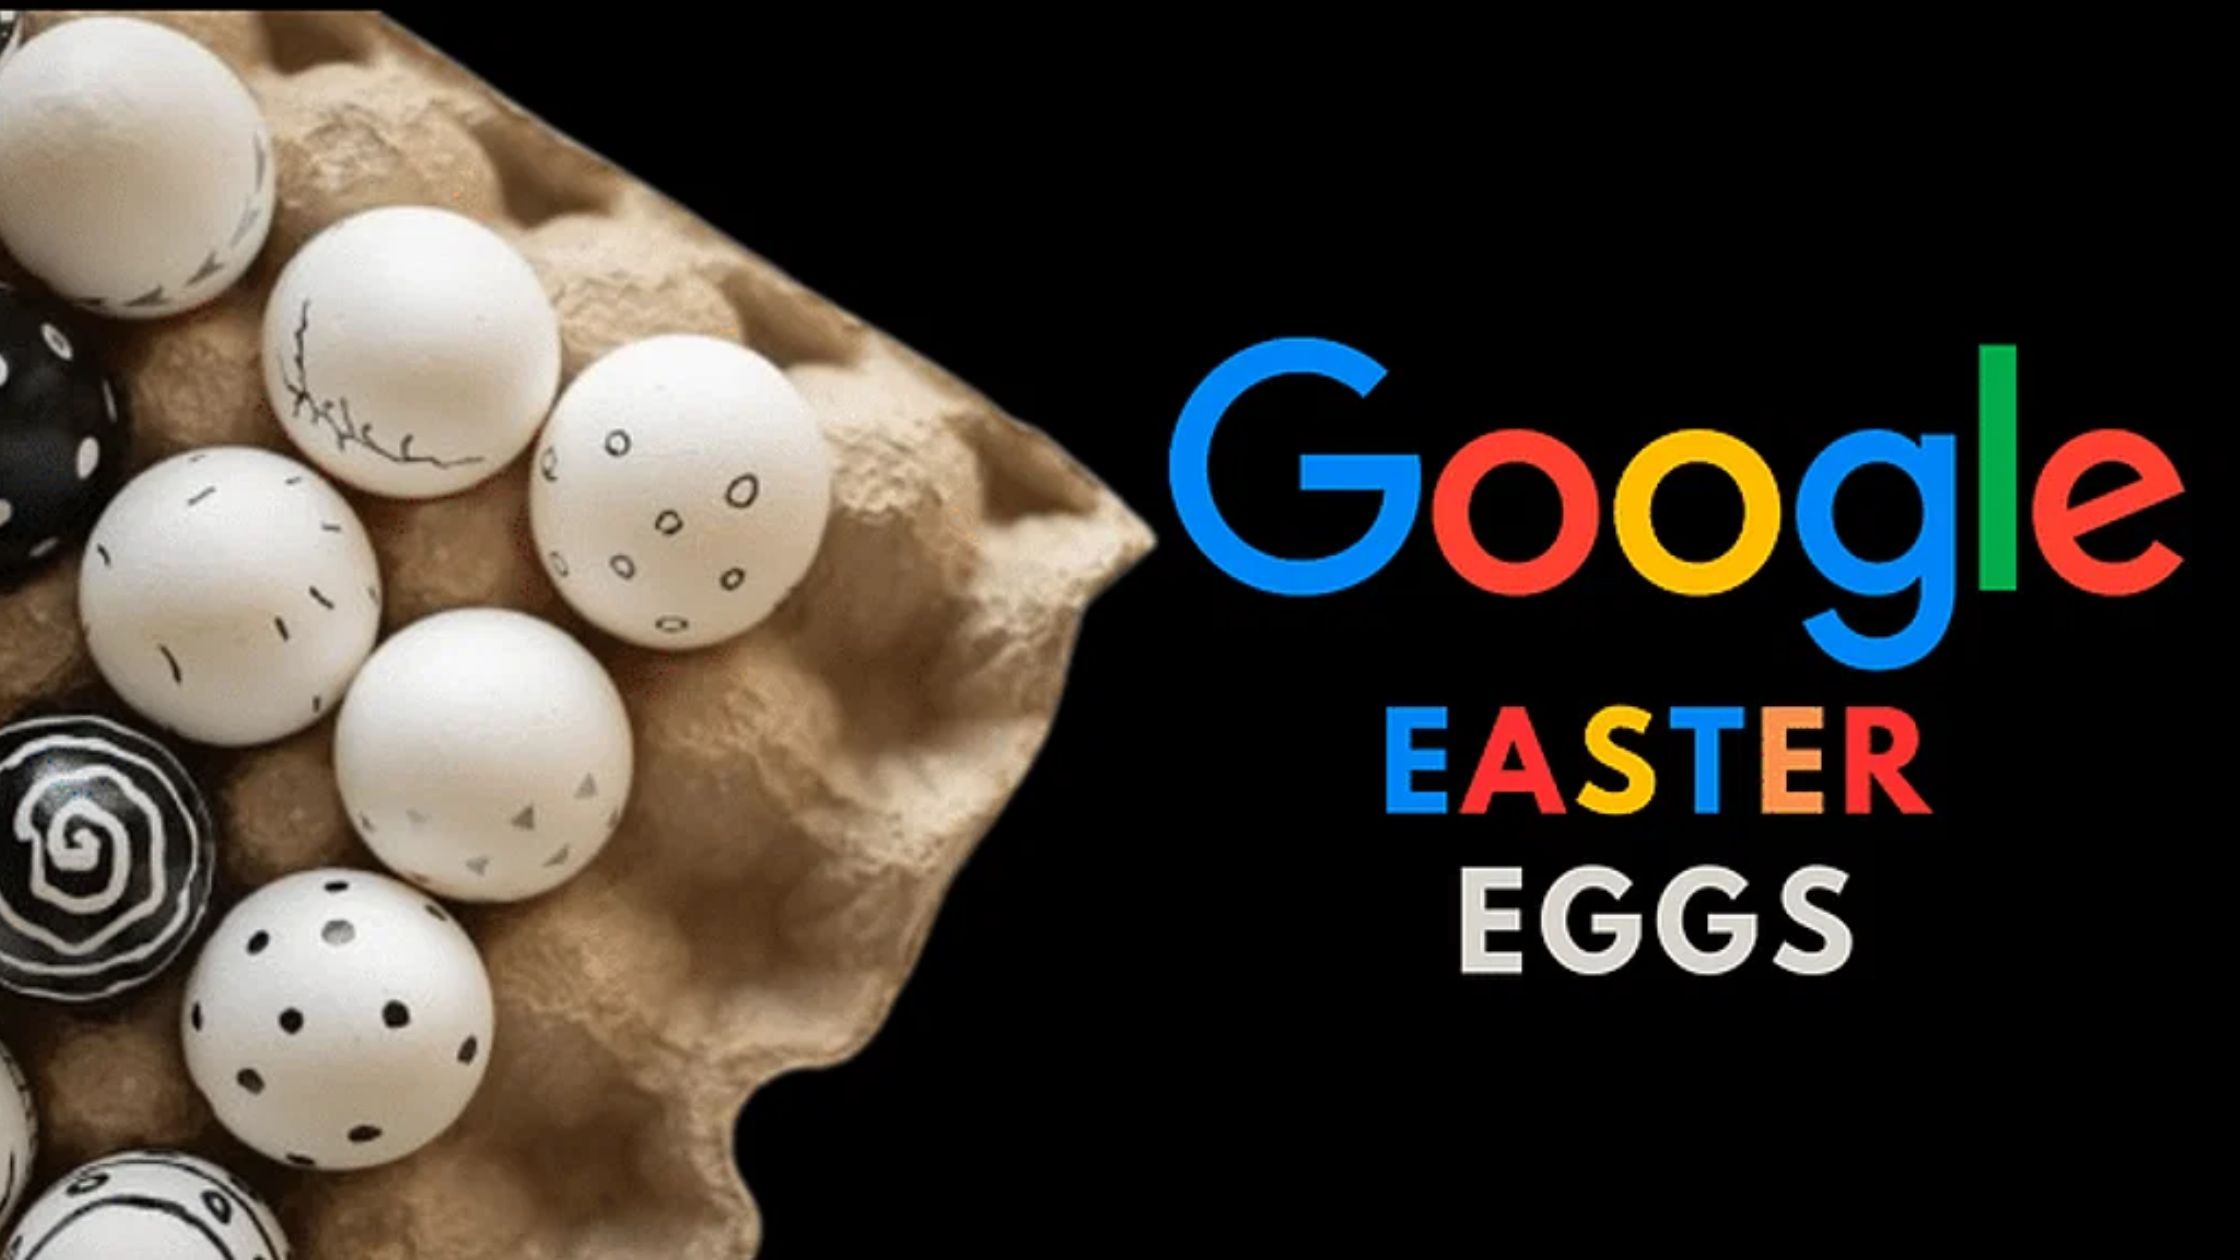 Easter Eggs in Google